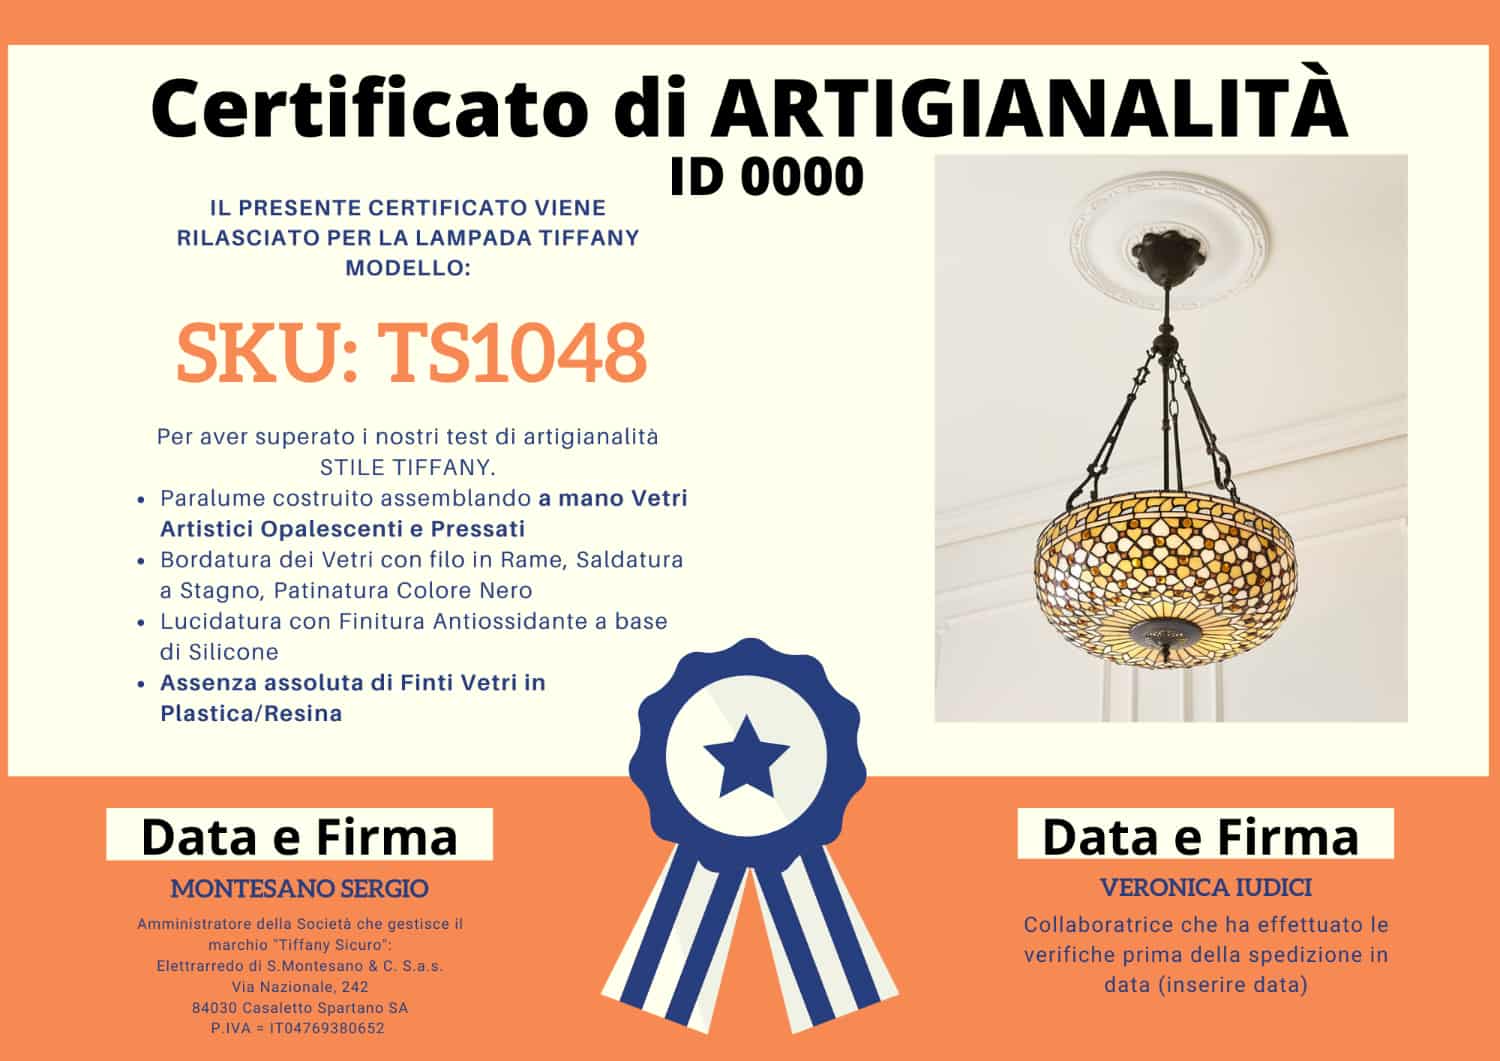 Lampadario Tiffany Dorato Invertito, certificato